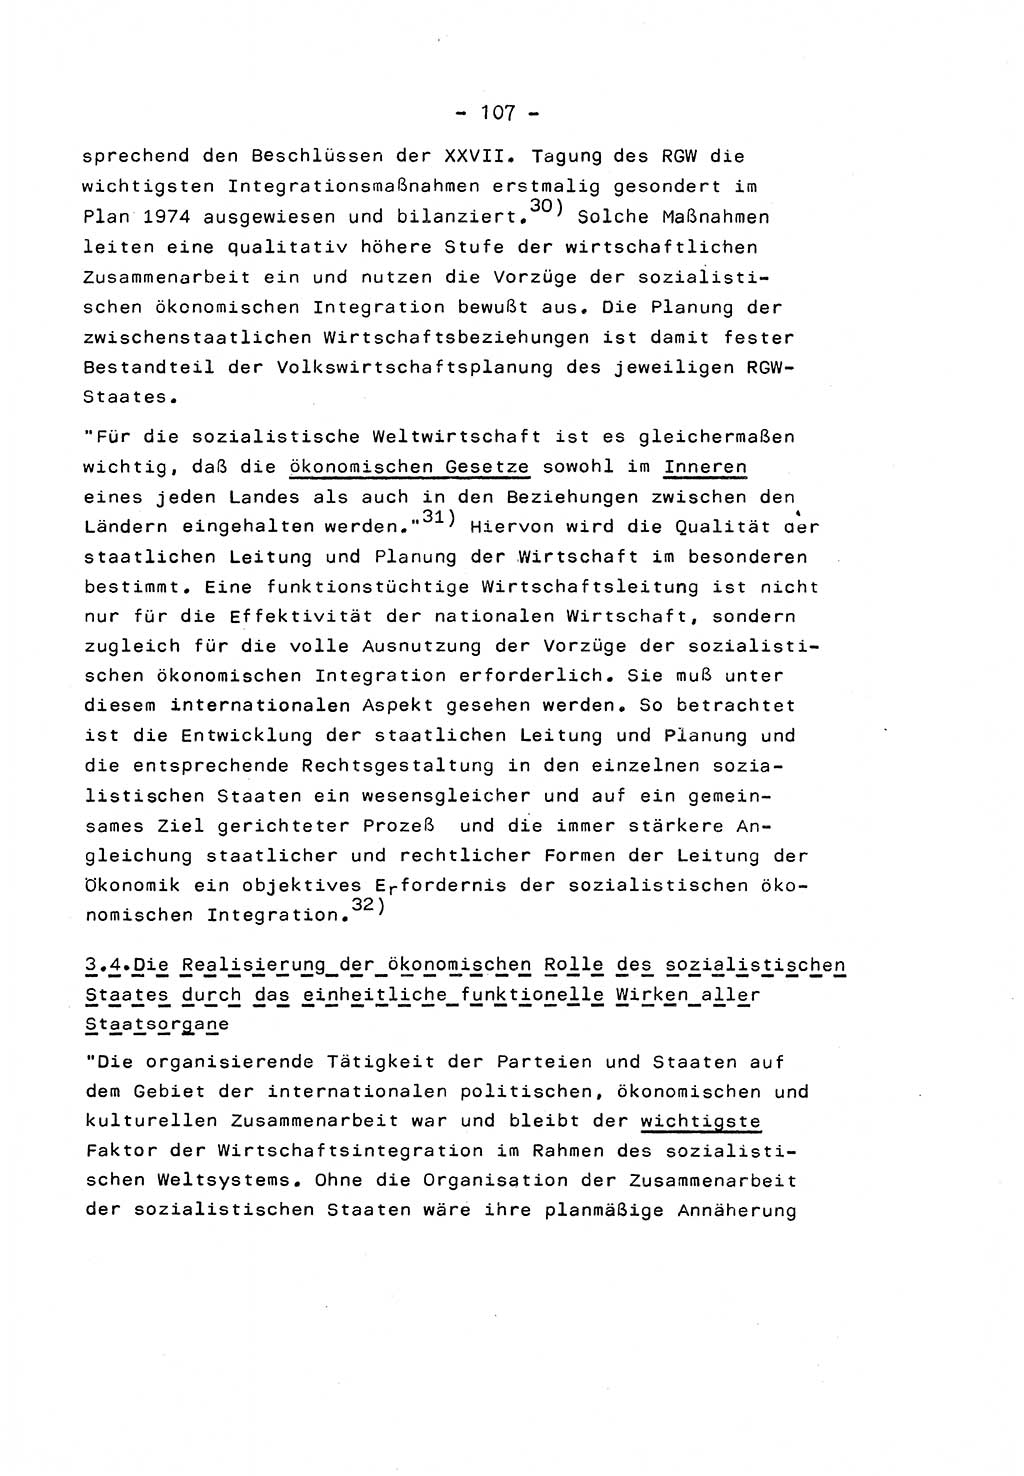 Marxistisch-leninistische Staats- und Rechtstheorie [Deutsche Demokratische Republik (DDR)] 1975, Seite 107 (ML St.-R.-Th. DDR 1975, S. 107)